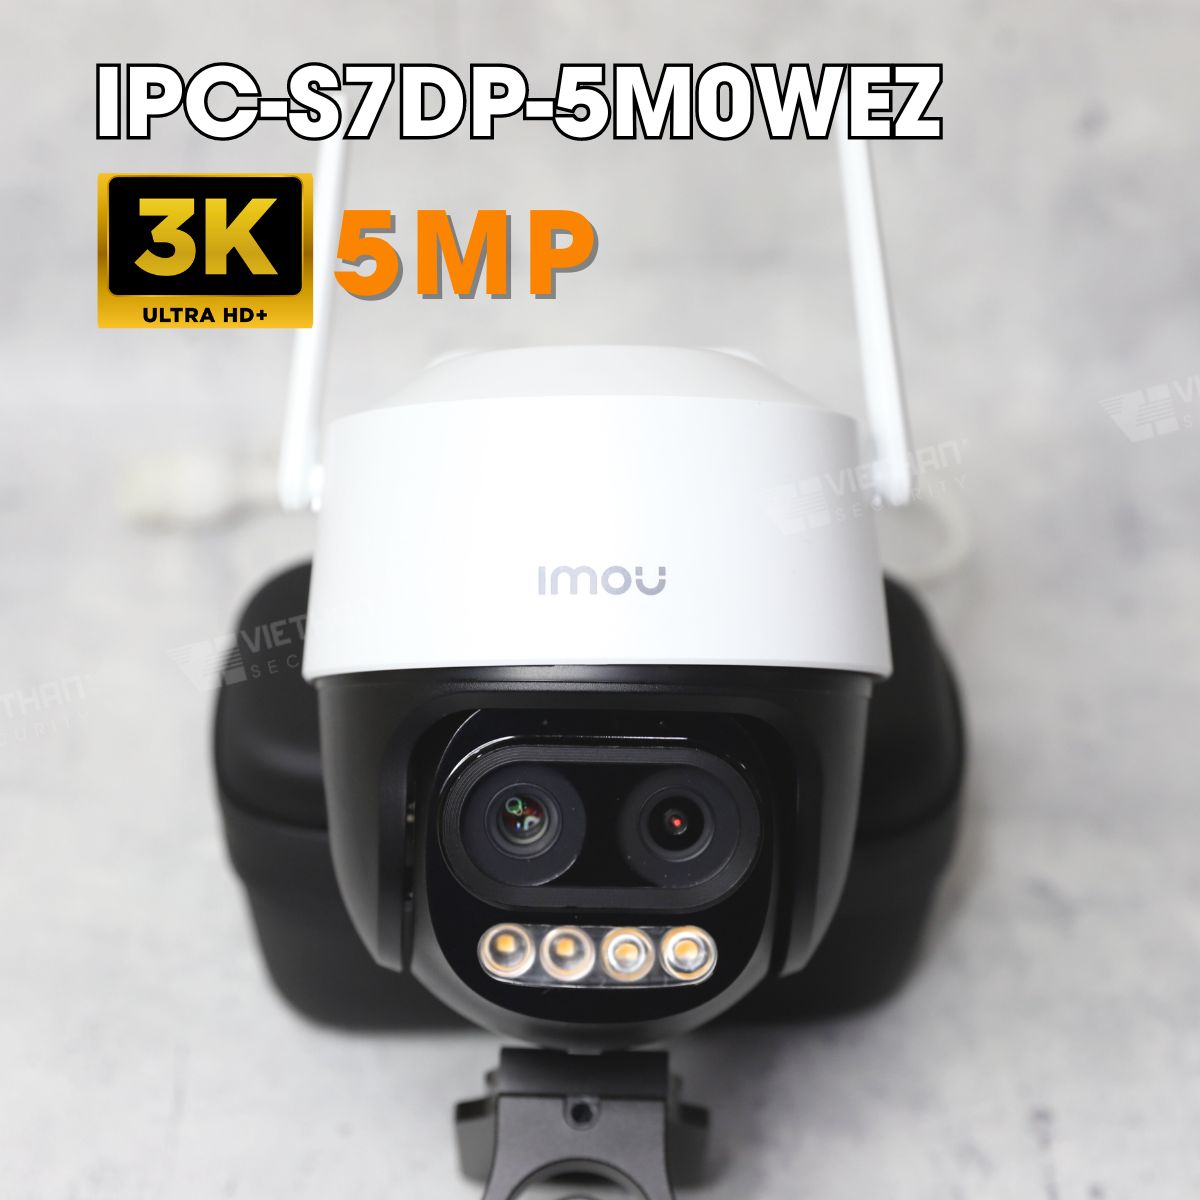 Camera Cruizer Z IMOU IPC-S7DP-5M0WEZ 3K 5MP, hồng ngoại ban đêm 56m, bật đèn và còi hú, AI thông minh